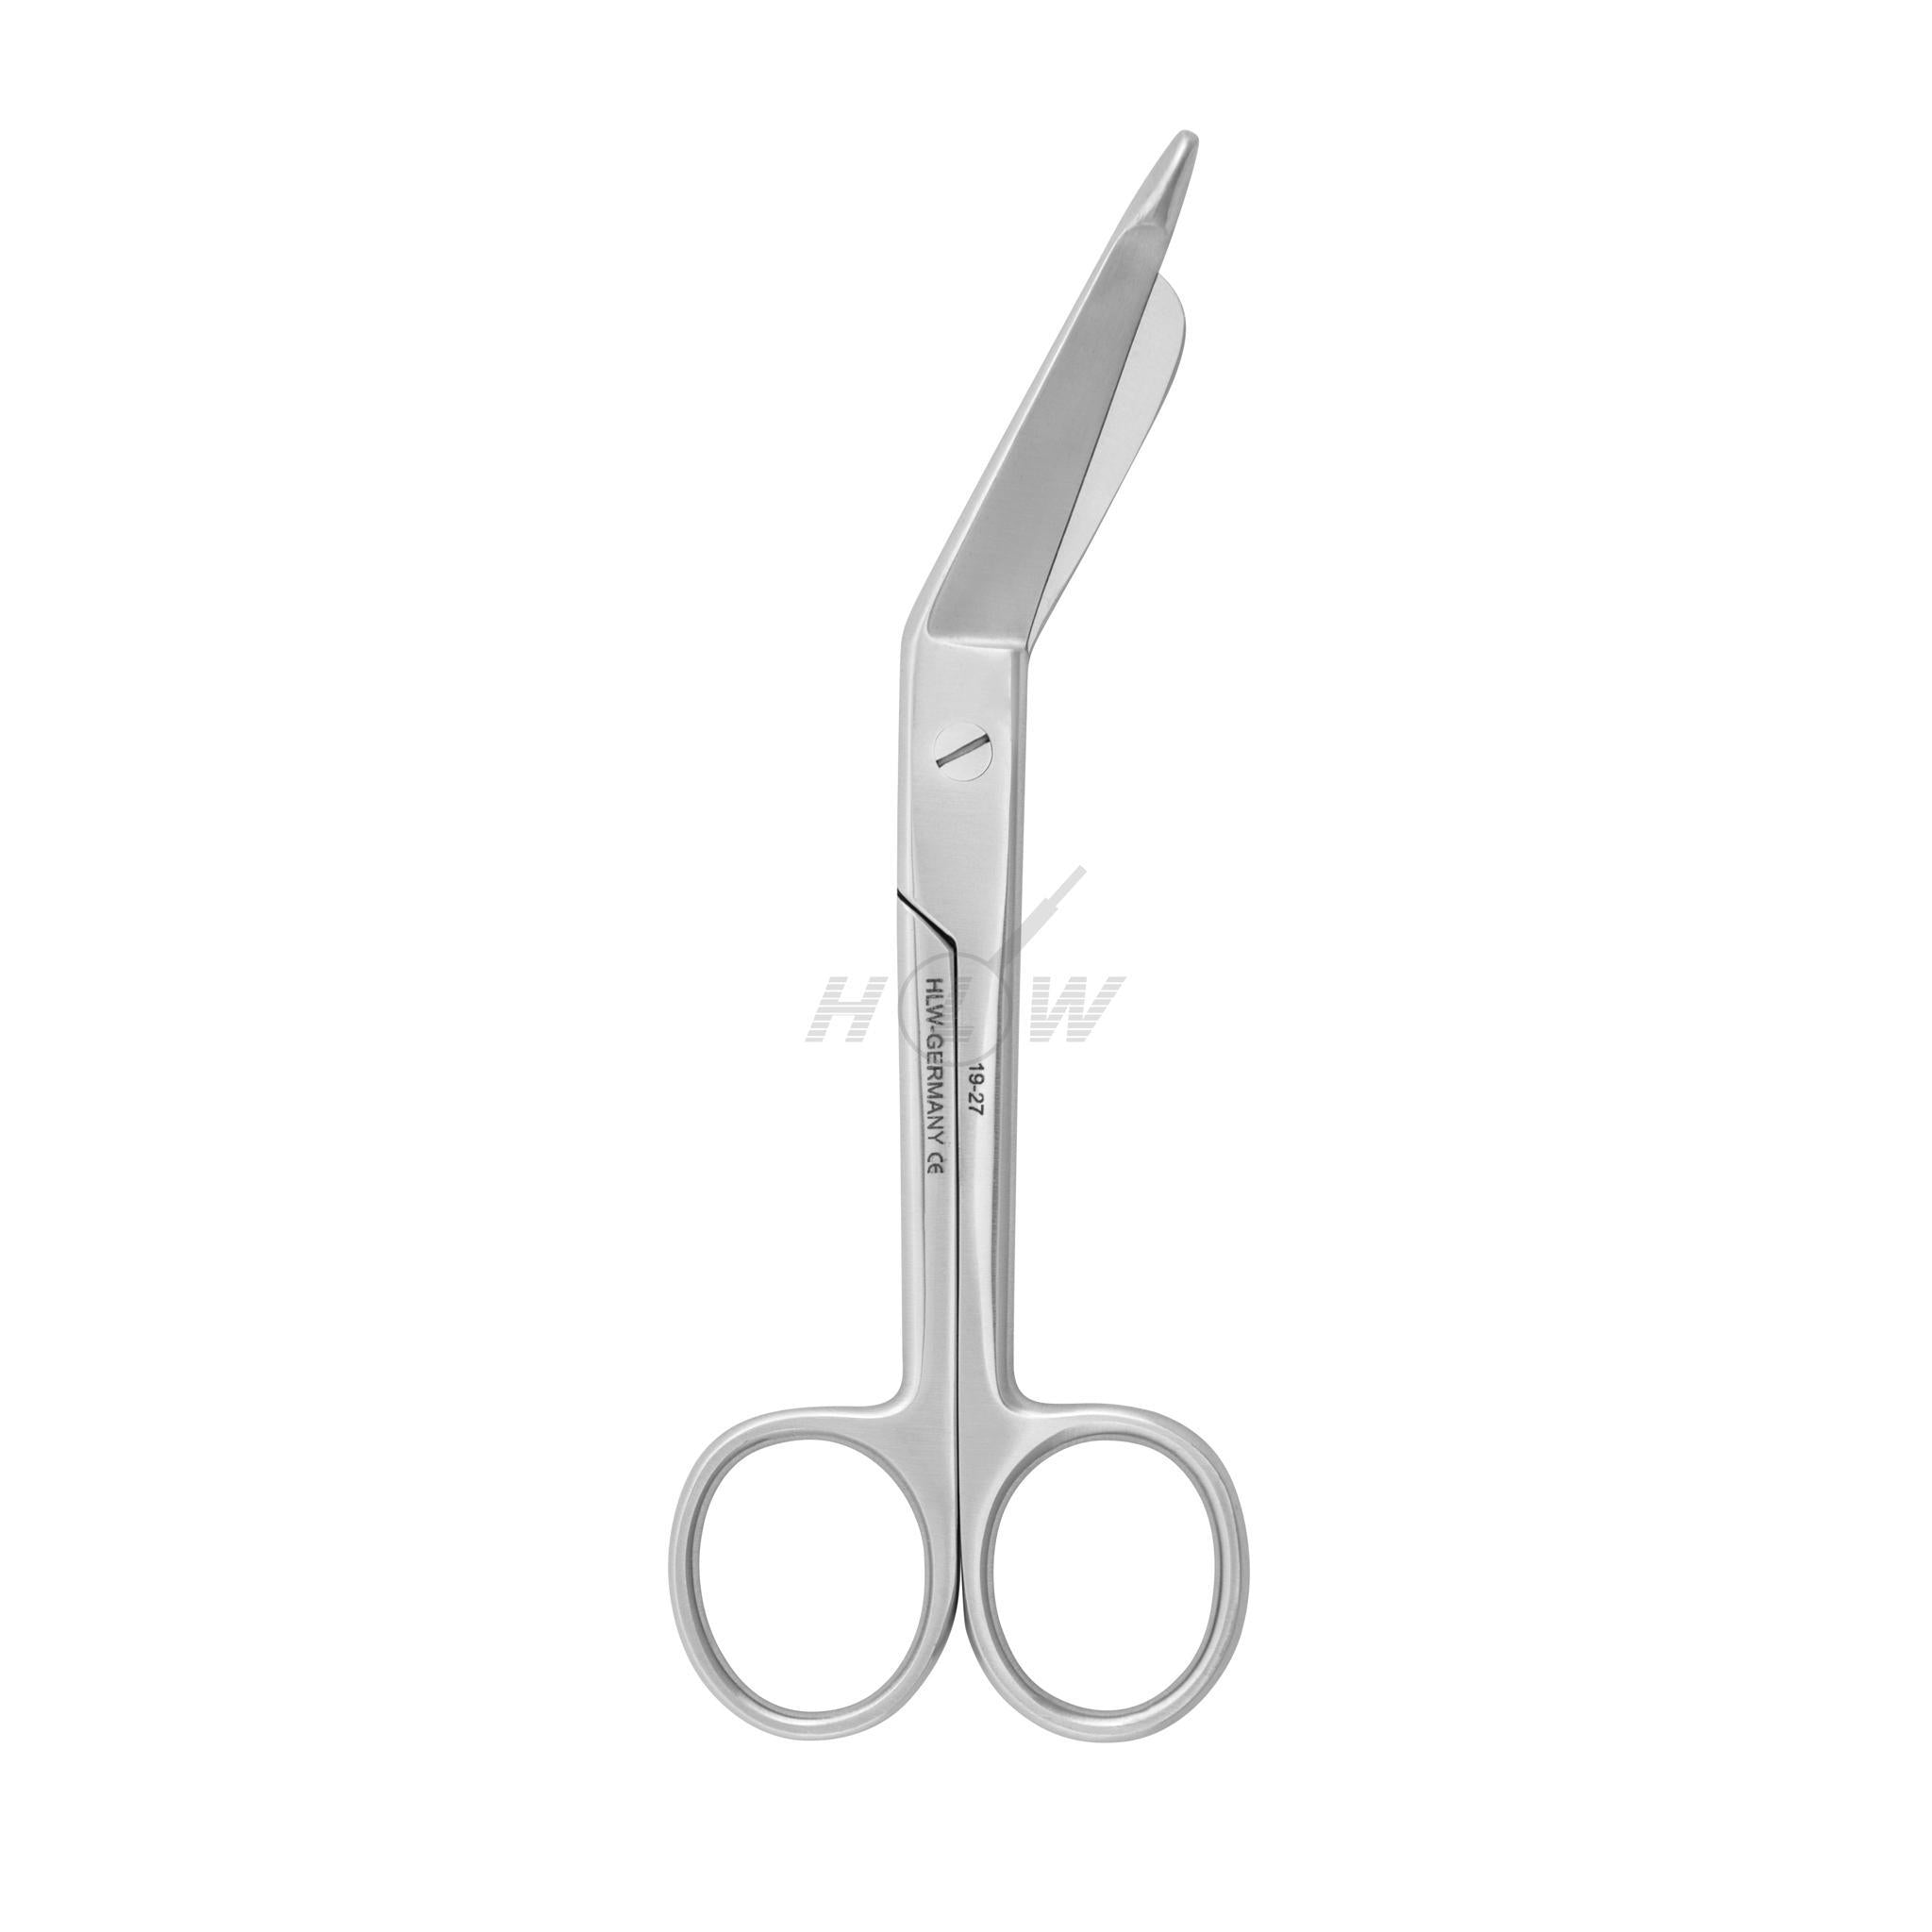 Bandage scissors 14.5cm